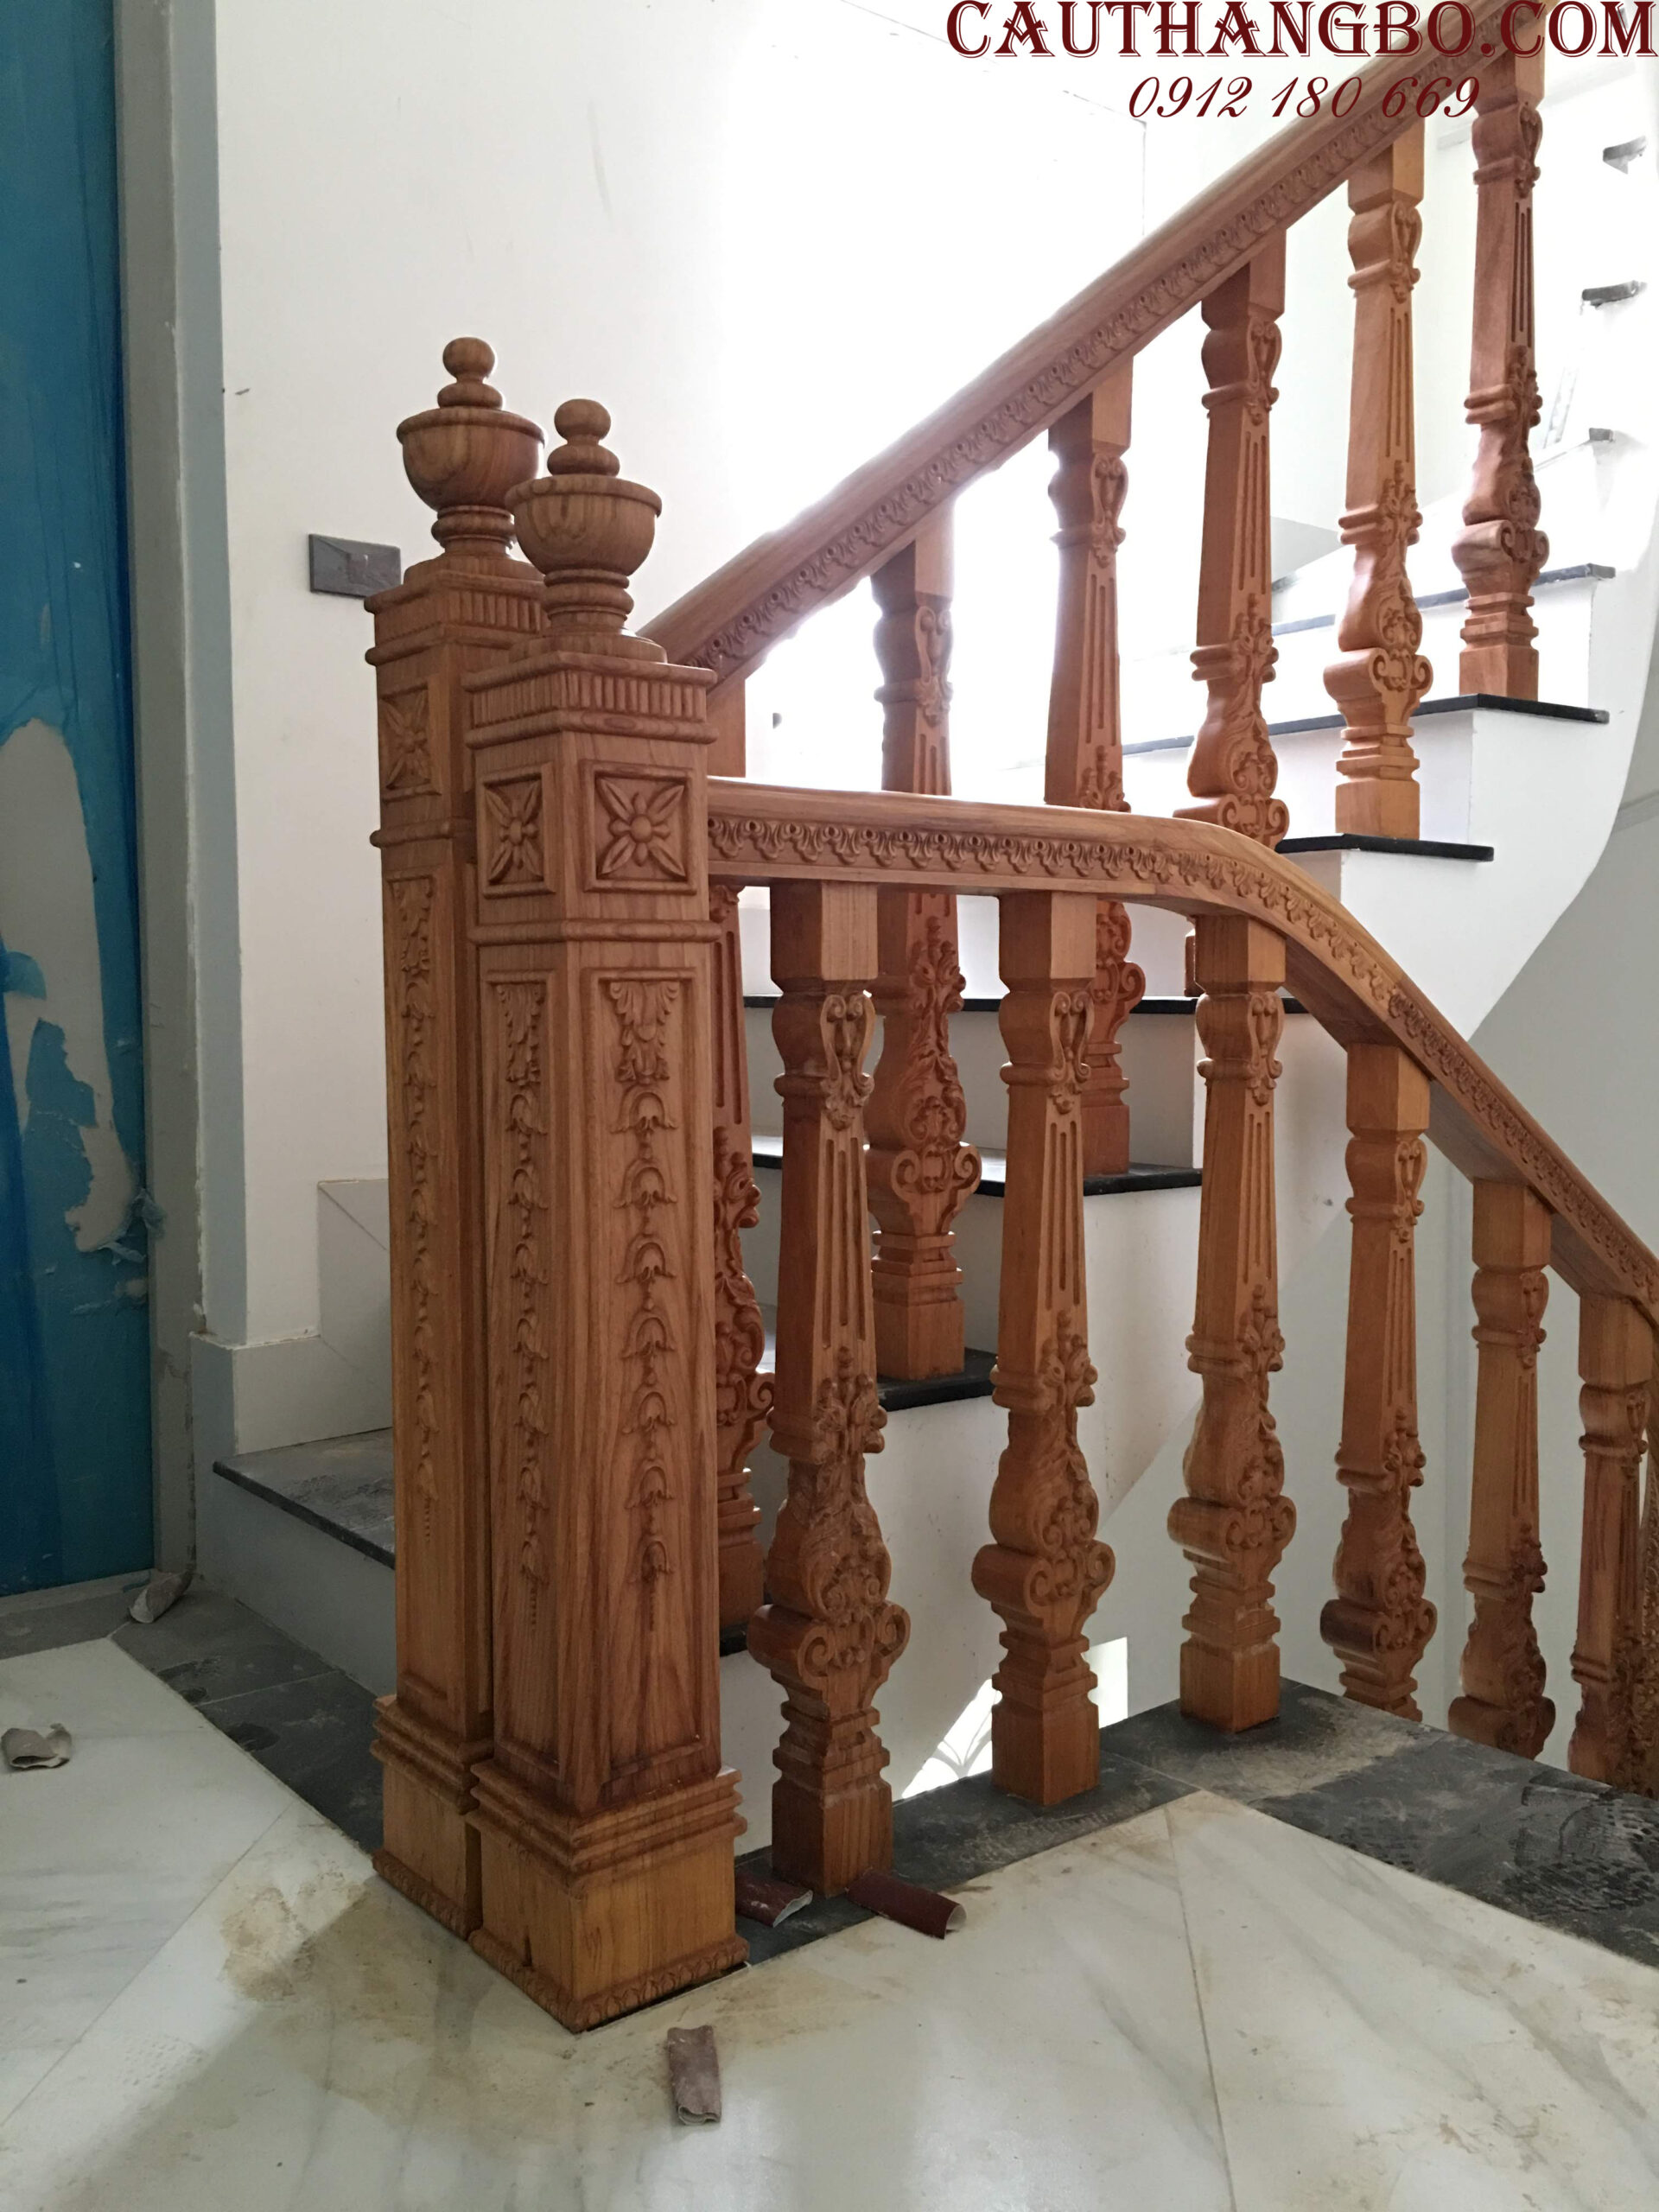 Cầu thang gỗ đẹp - Cầu Thang Bộ